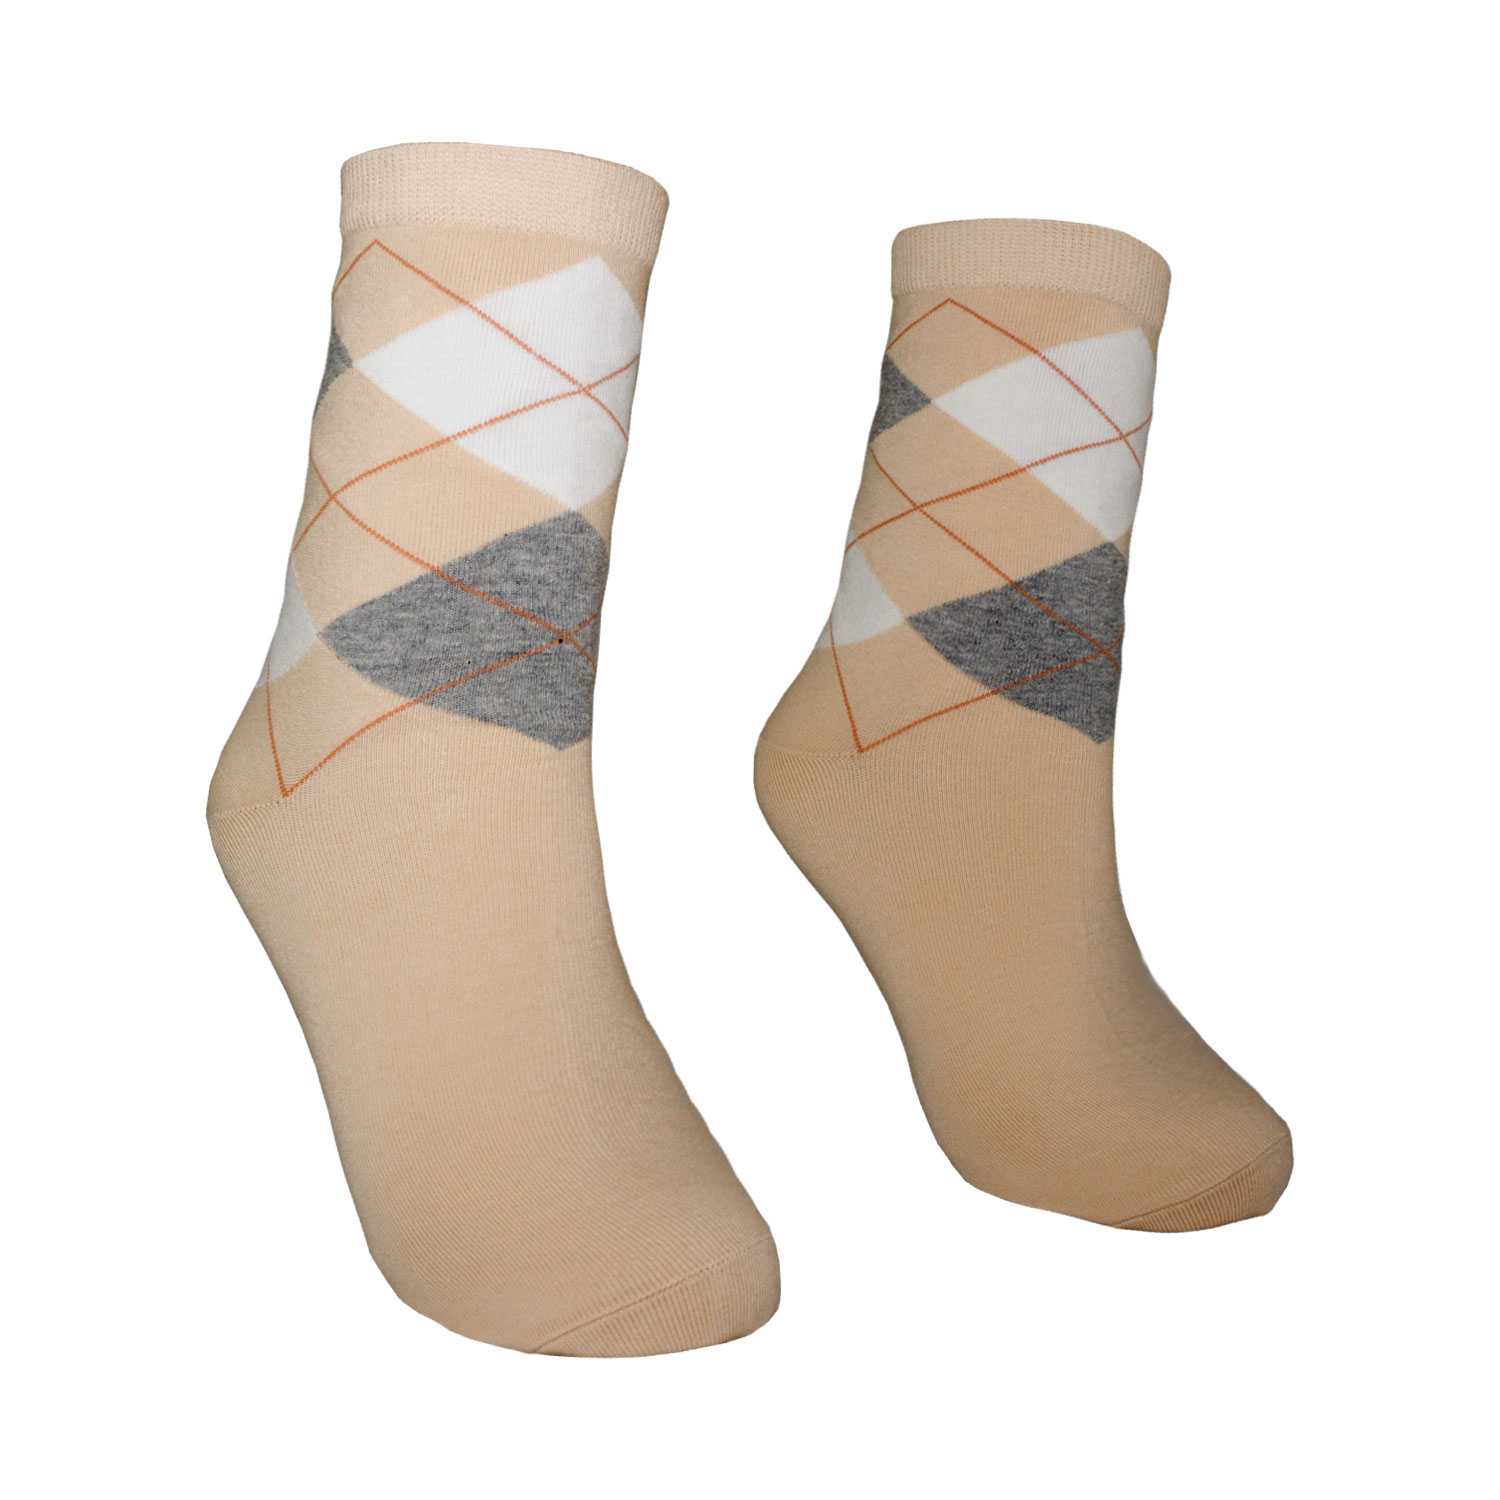 Men's Argyle Design Fashion Crew Socks - Zestique